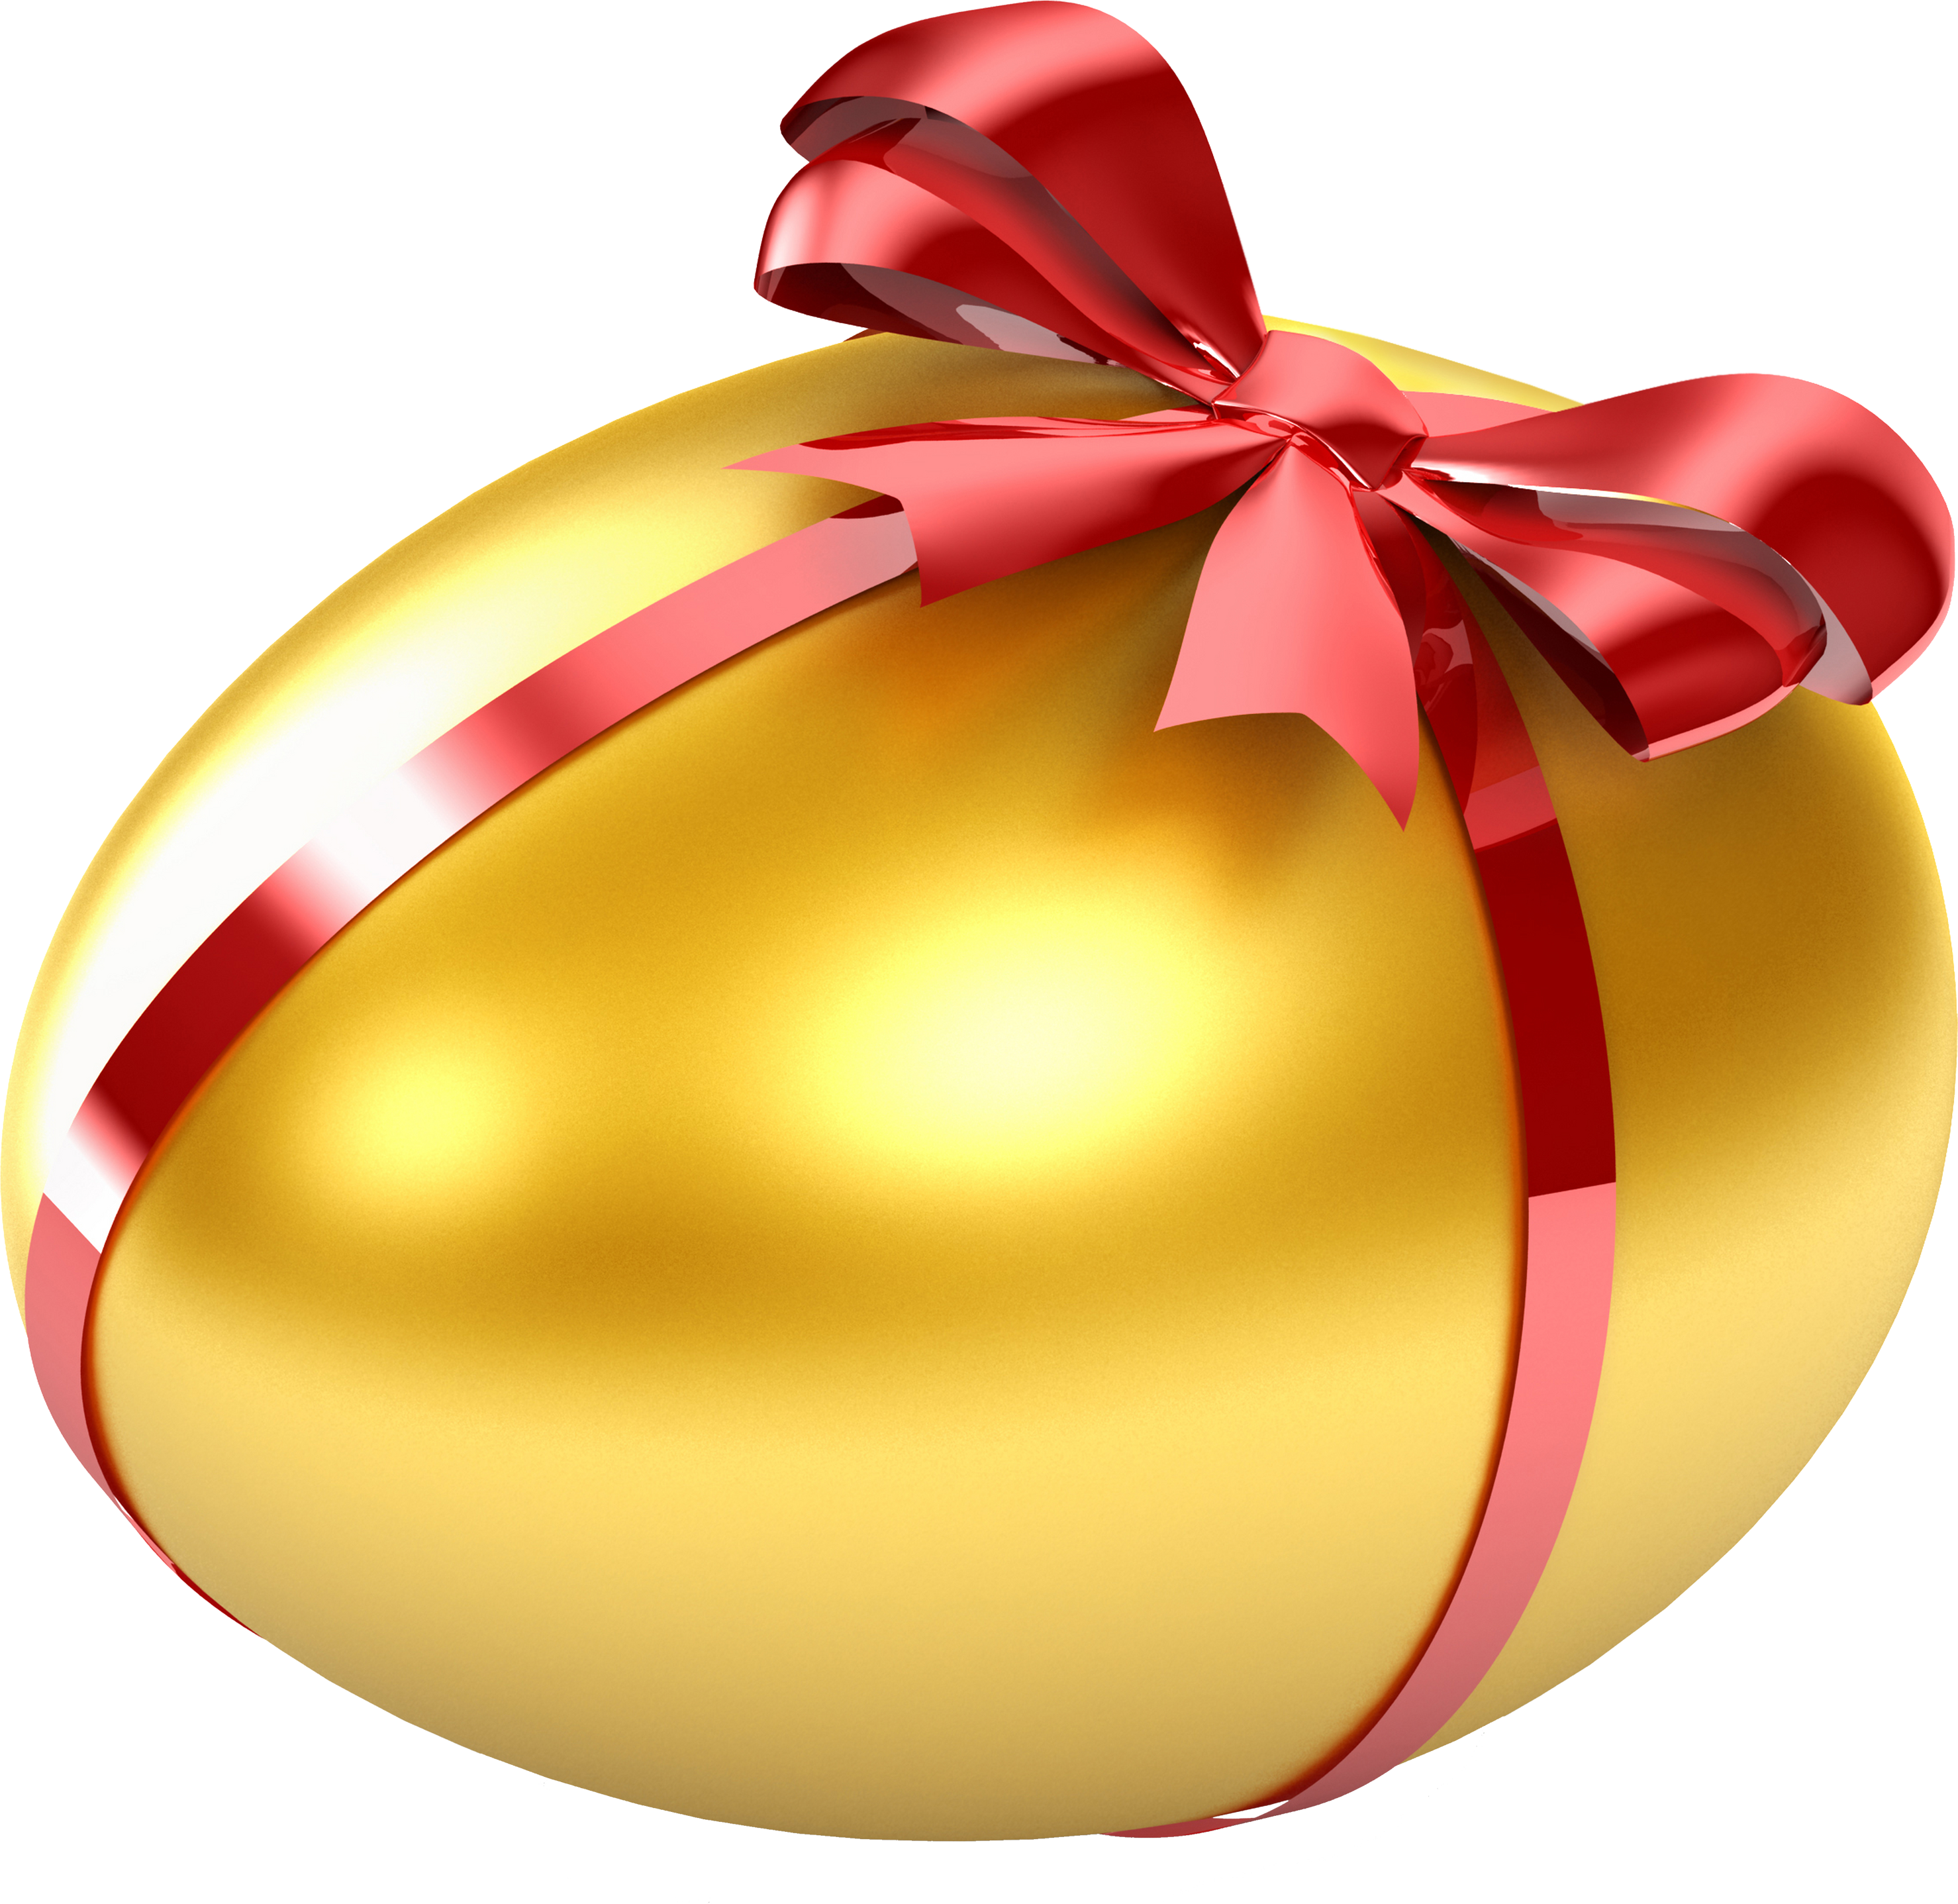 Golden Easter Egg PNG Transparent Images Free Download, Vector Files